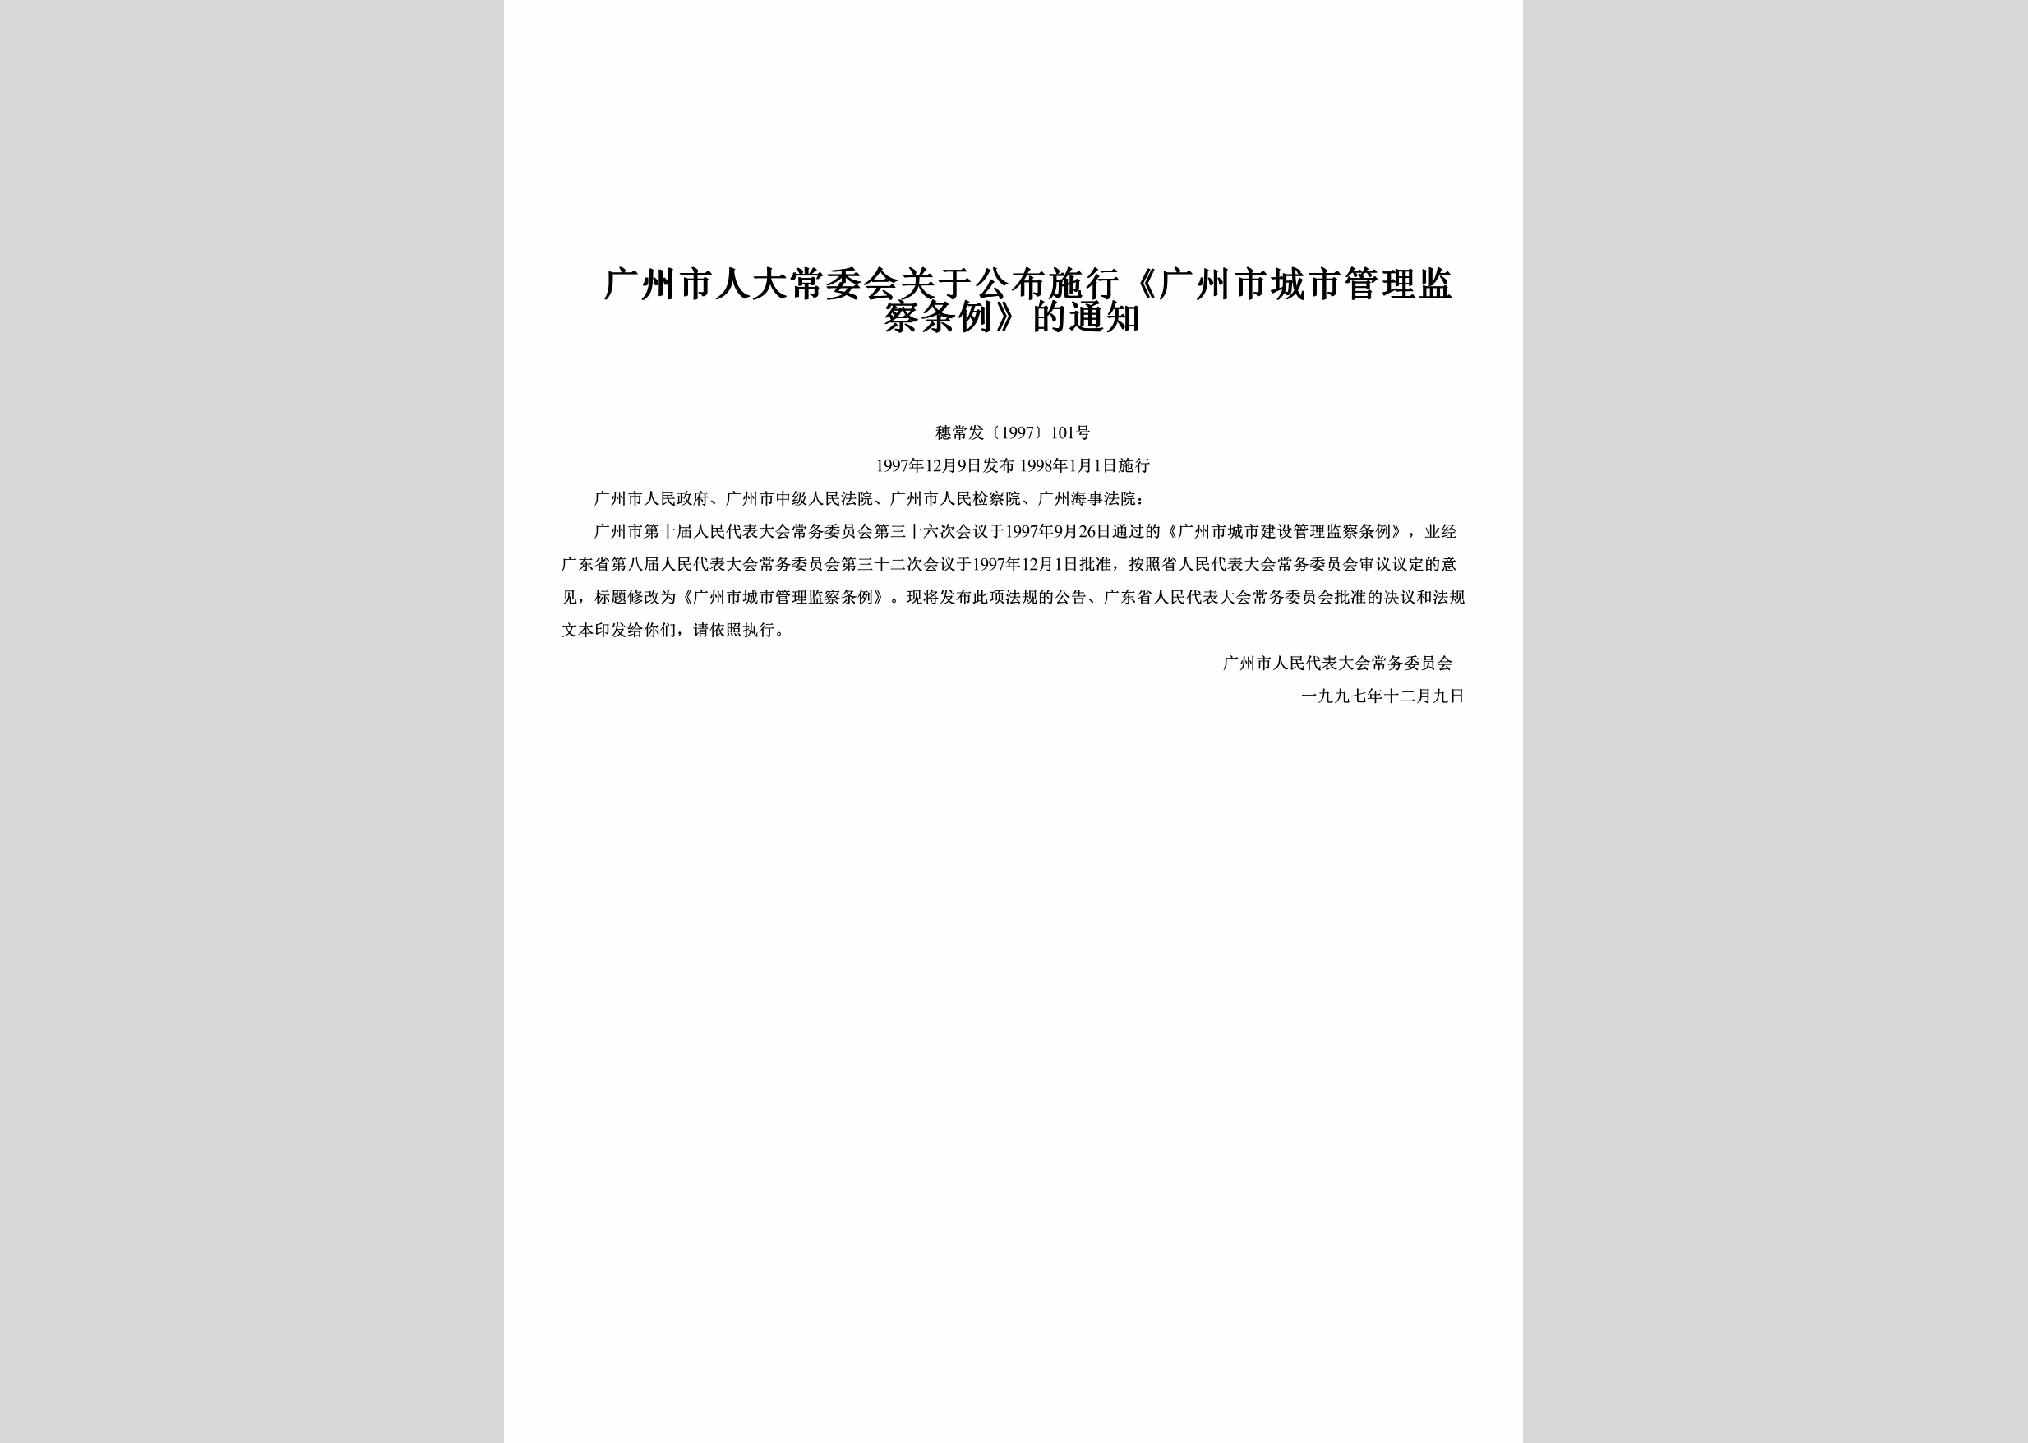 穗常发[1997]101号：关于公布施行《广州市城市管理监察条例》的通知